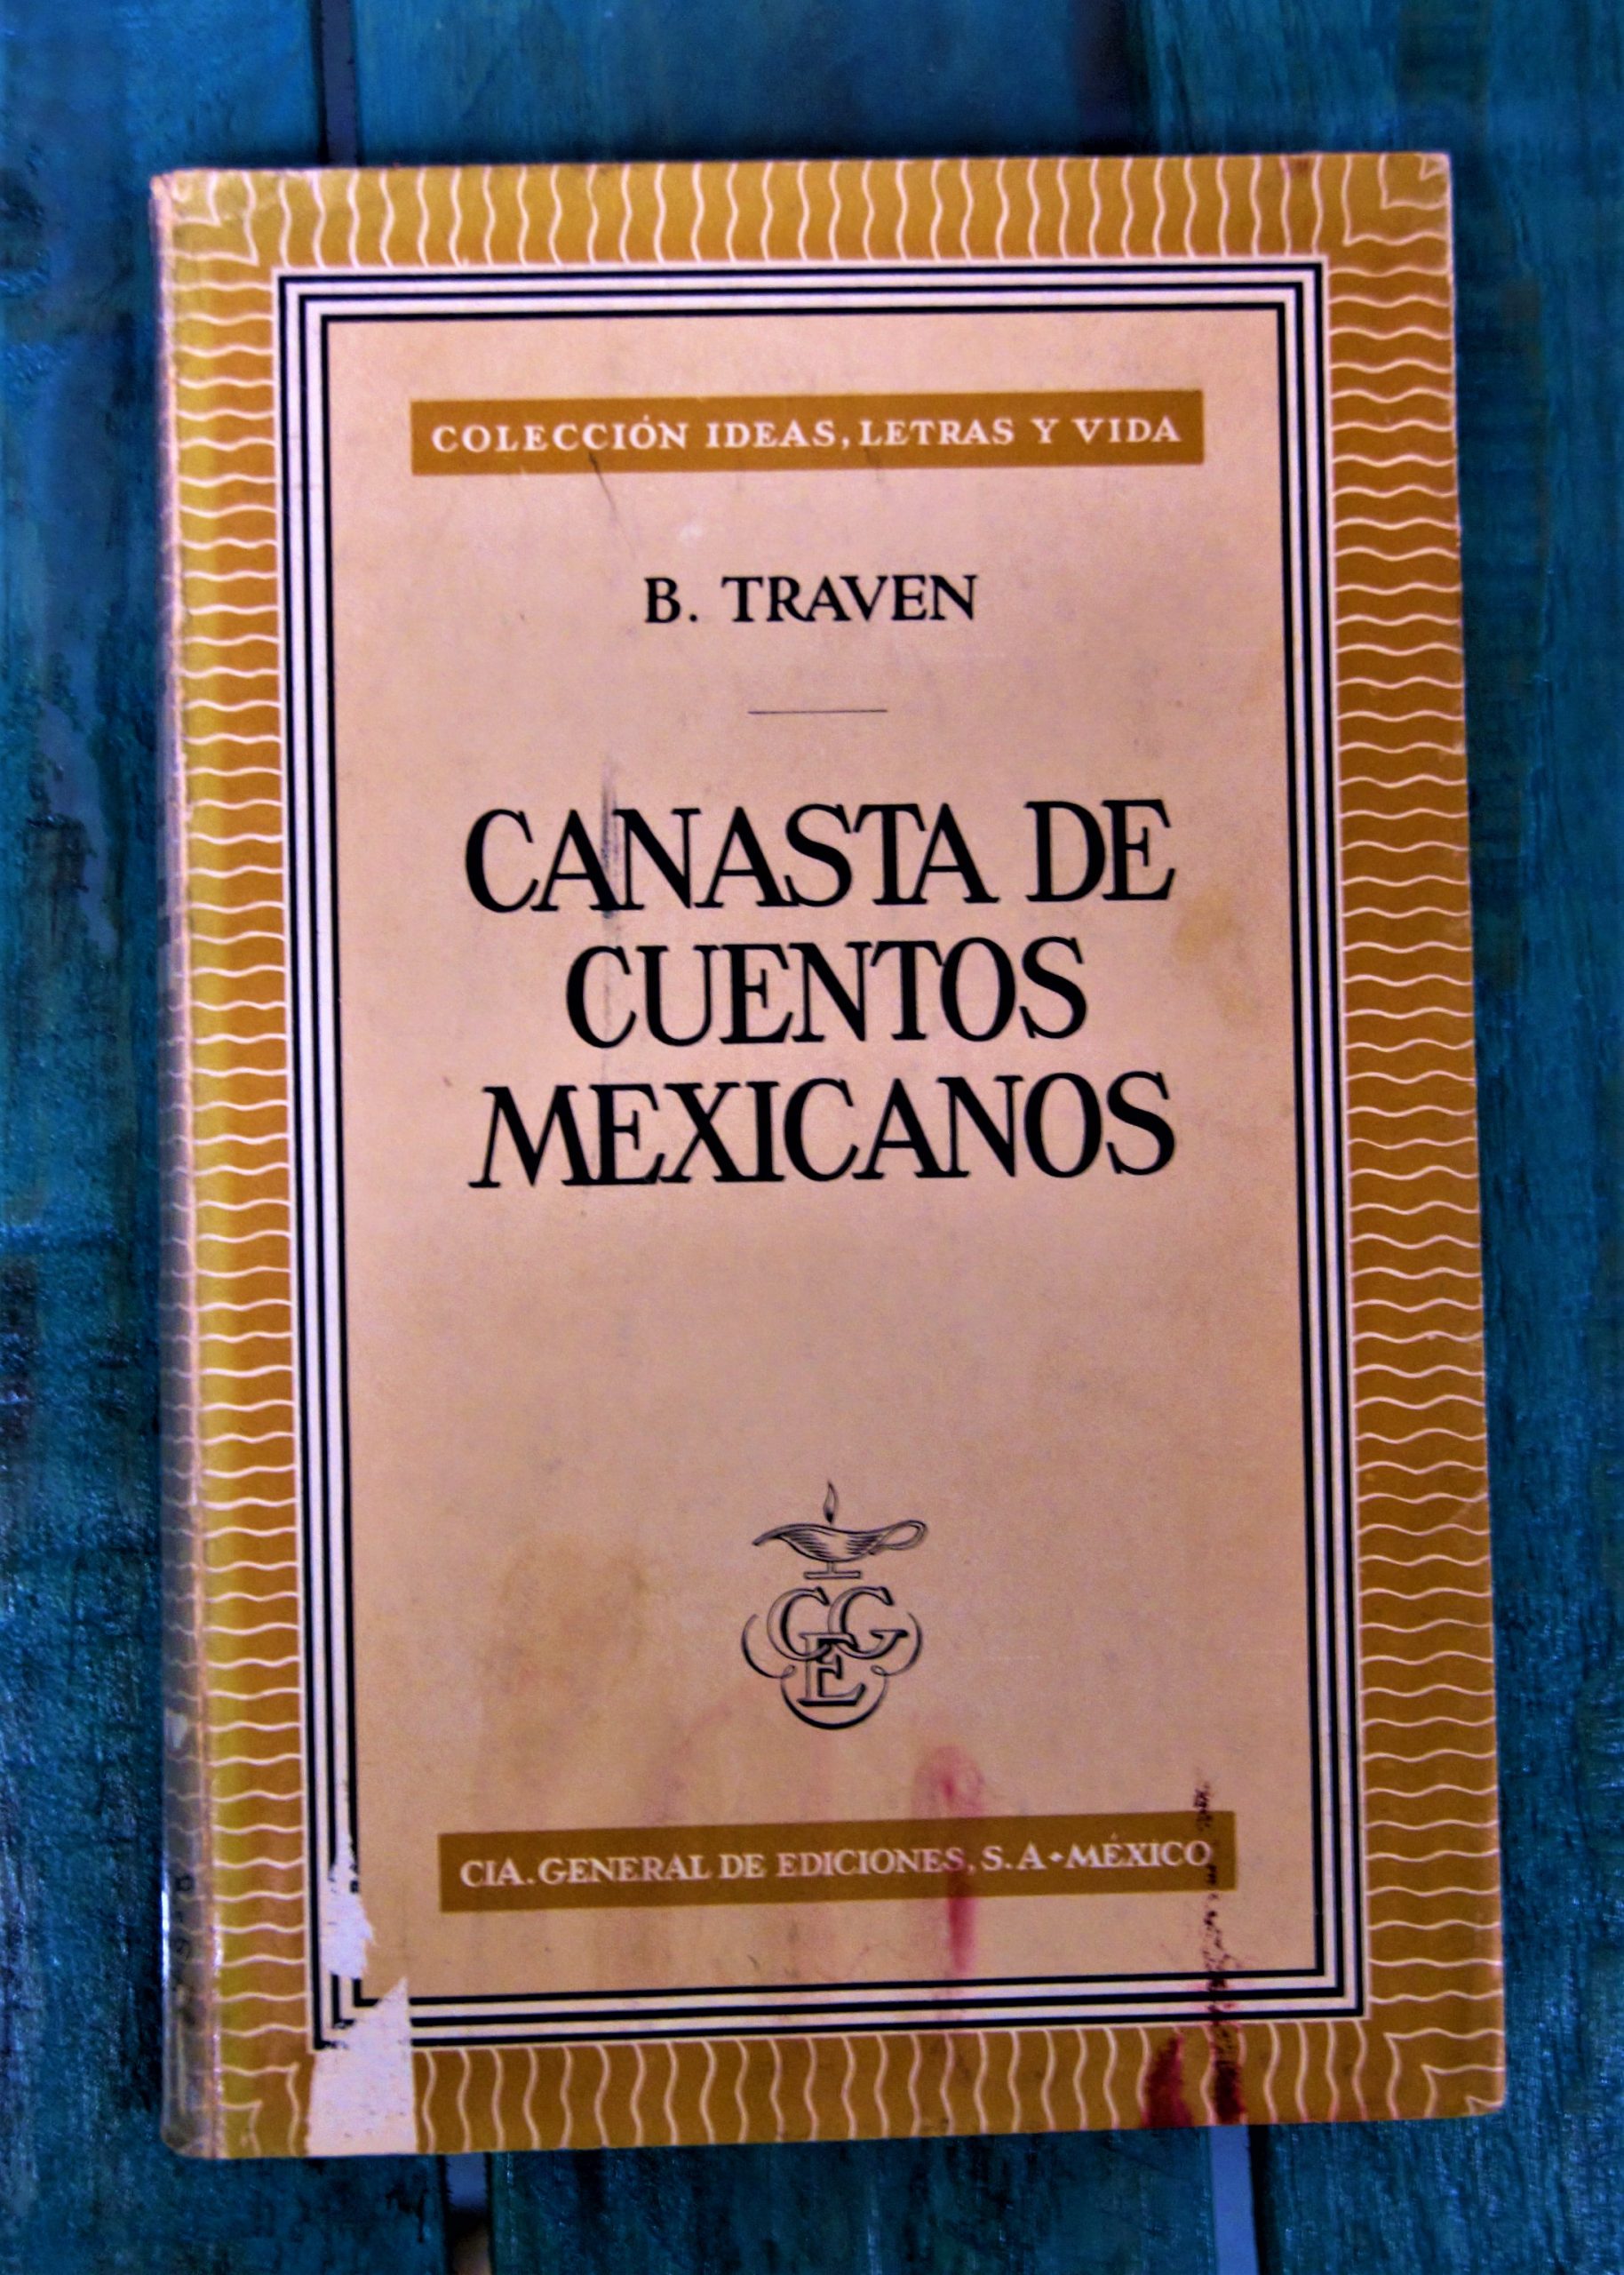 TRAVEN BRUNO. CANASTA DE CUENTOS MEXICANOS -